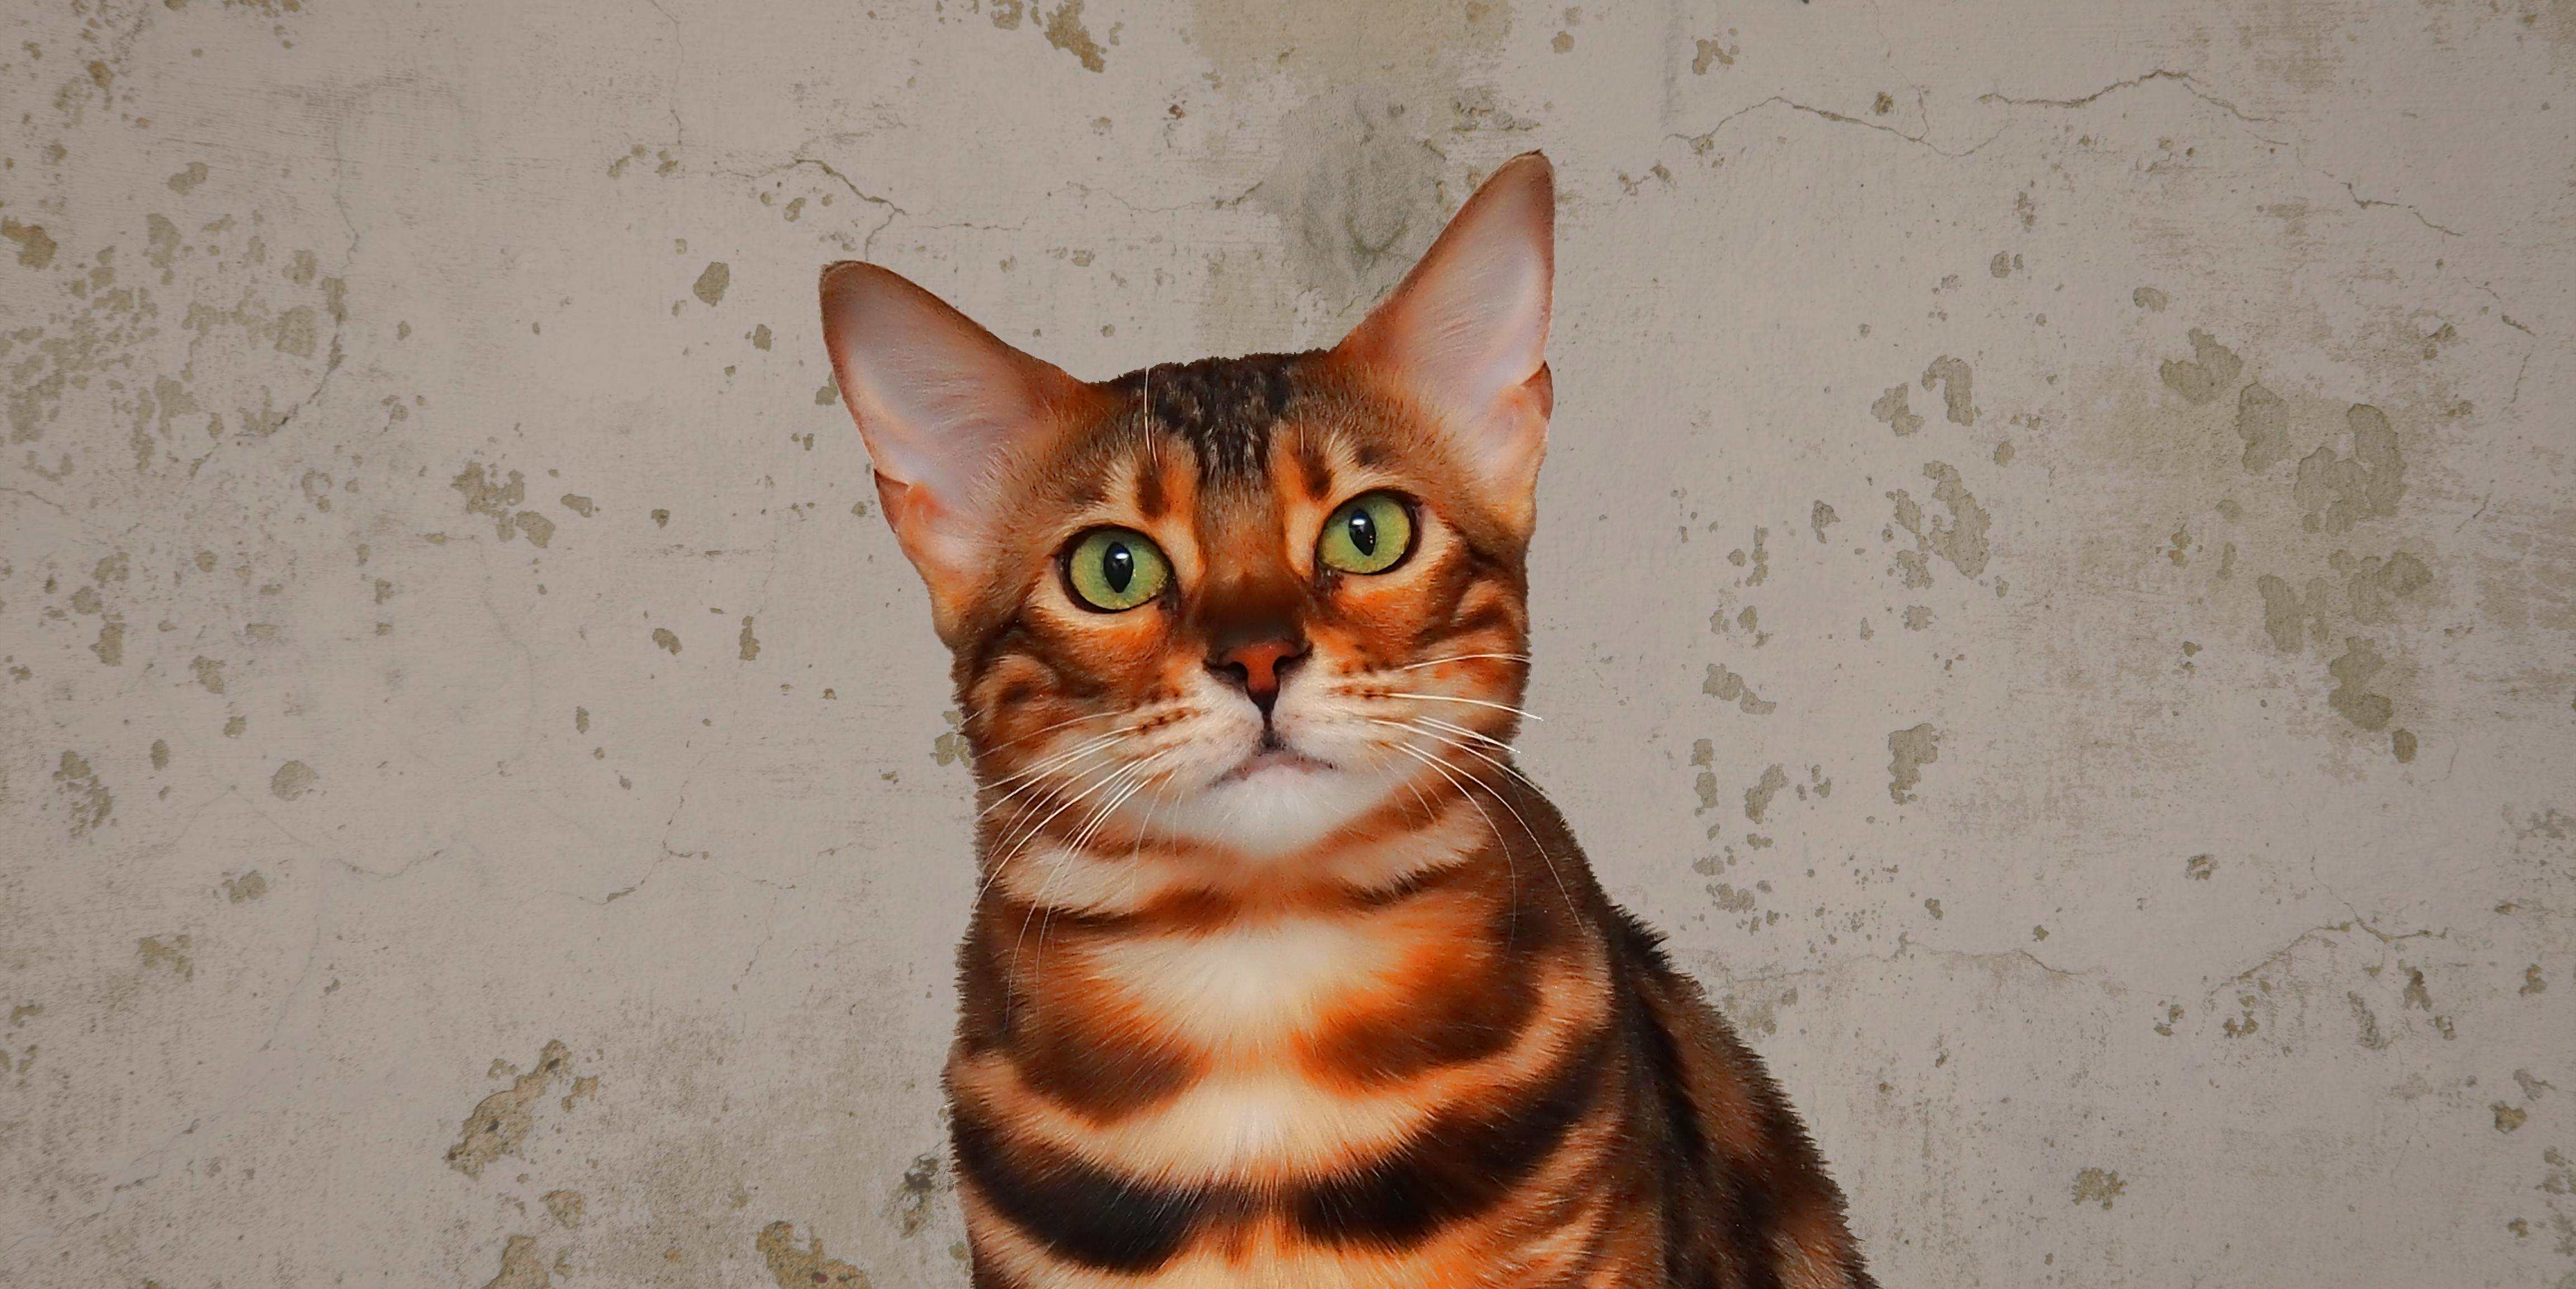 Free stock photo of cat, cat face, cat portrait